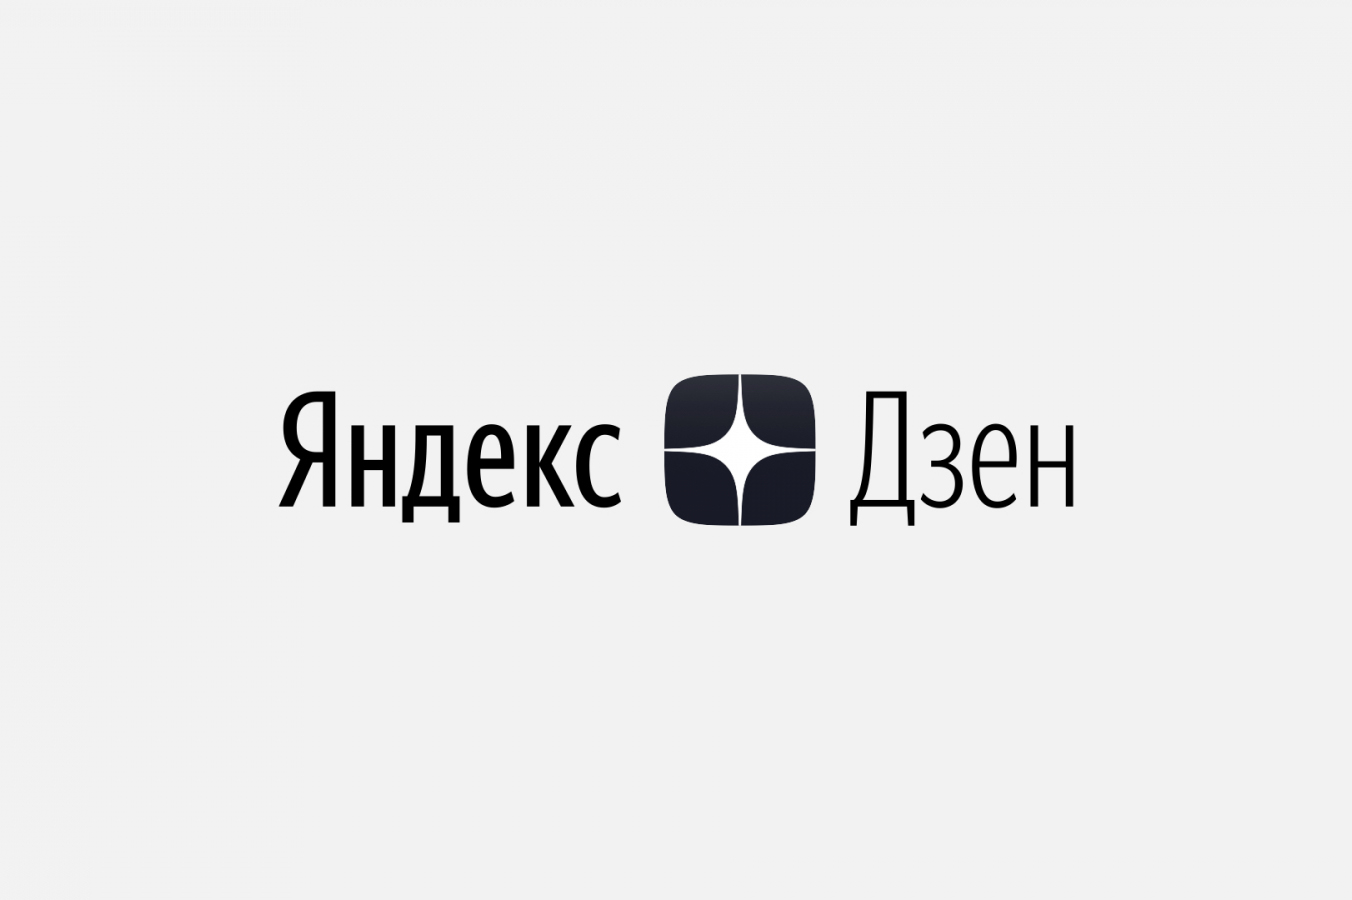 Построение персонального бренда и продвижение бизнеса через блогеров Яндекс.Дзен